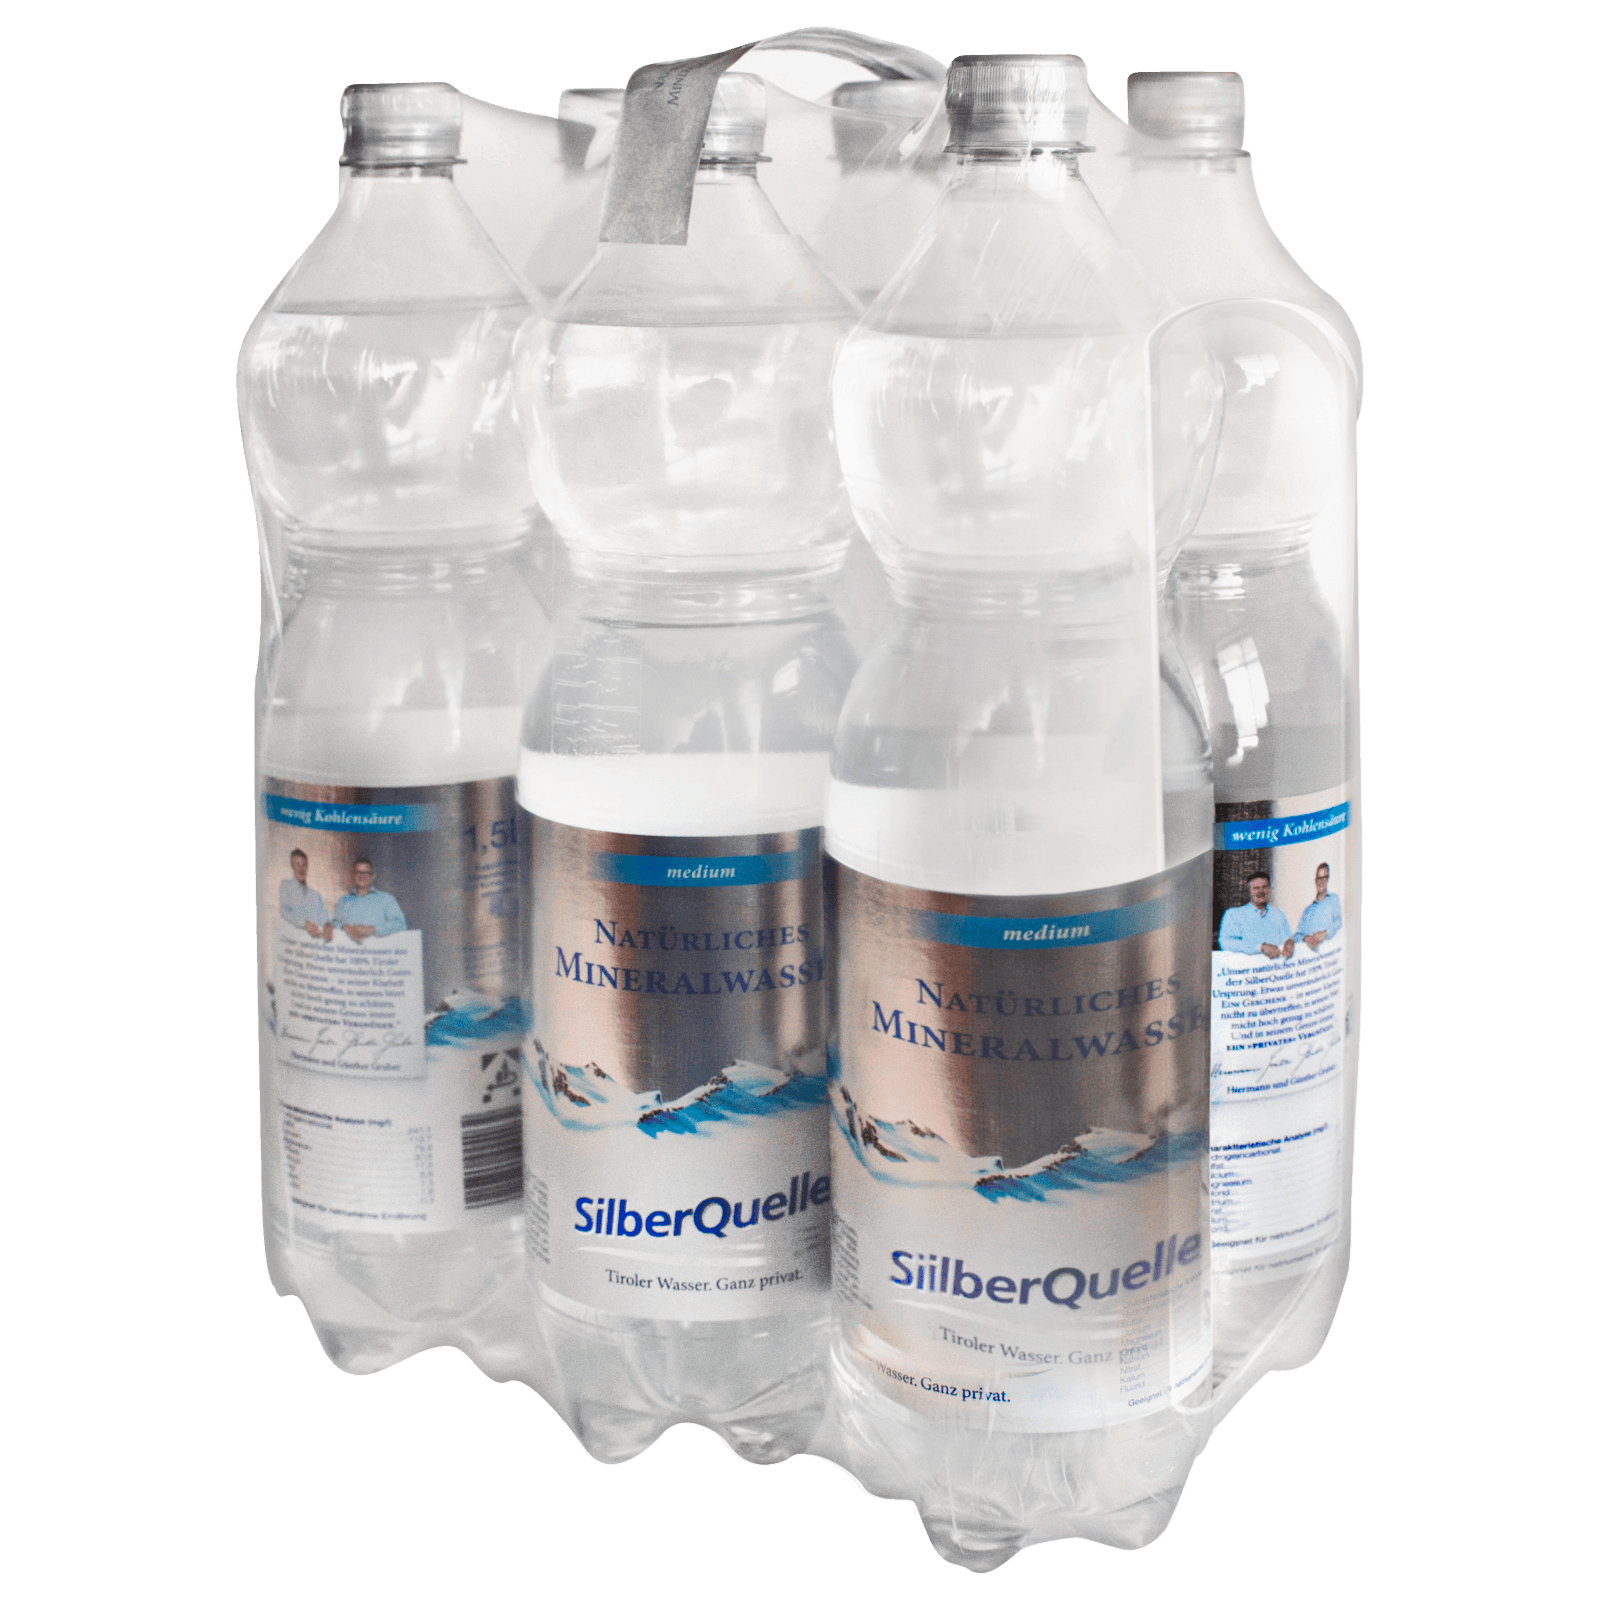 Silberquelle Mineralwasser medium 6x1,5l  für 2.94 EUR